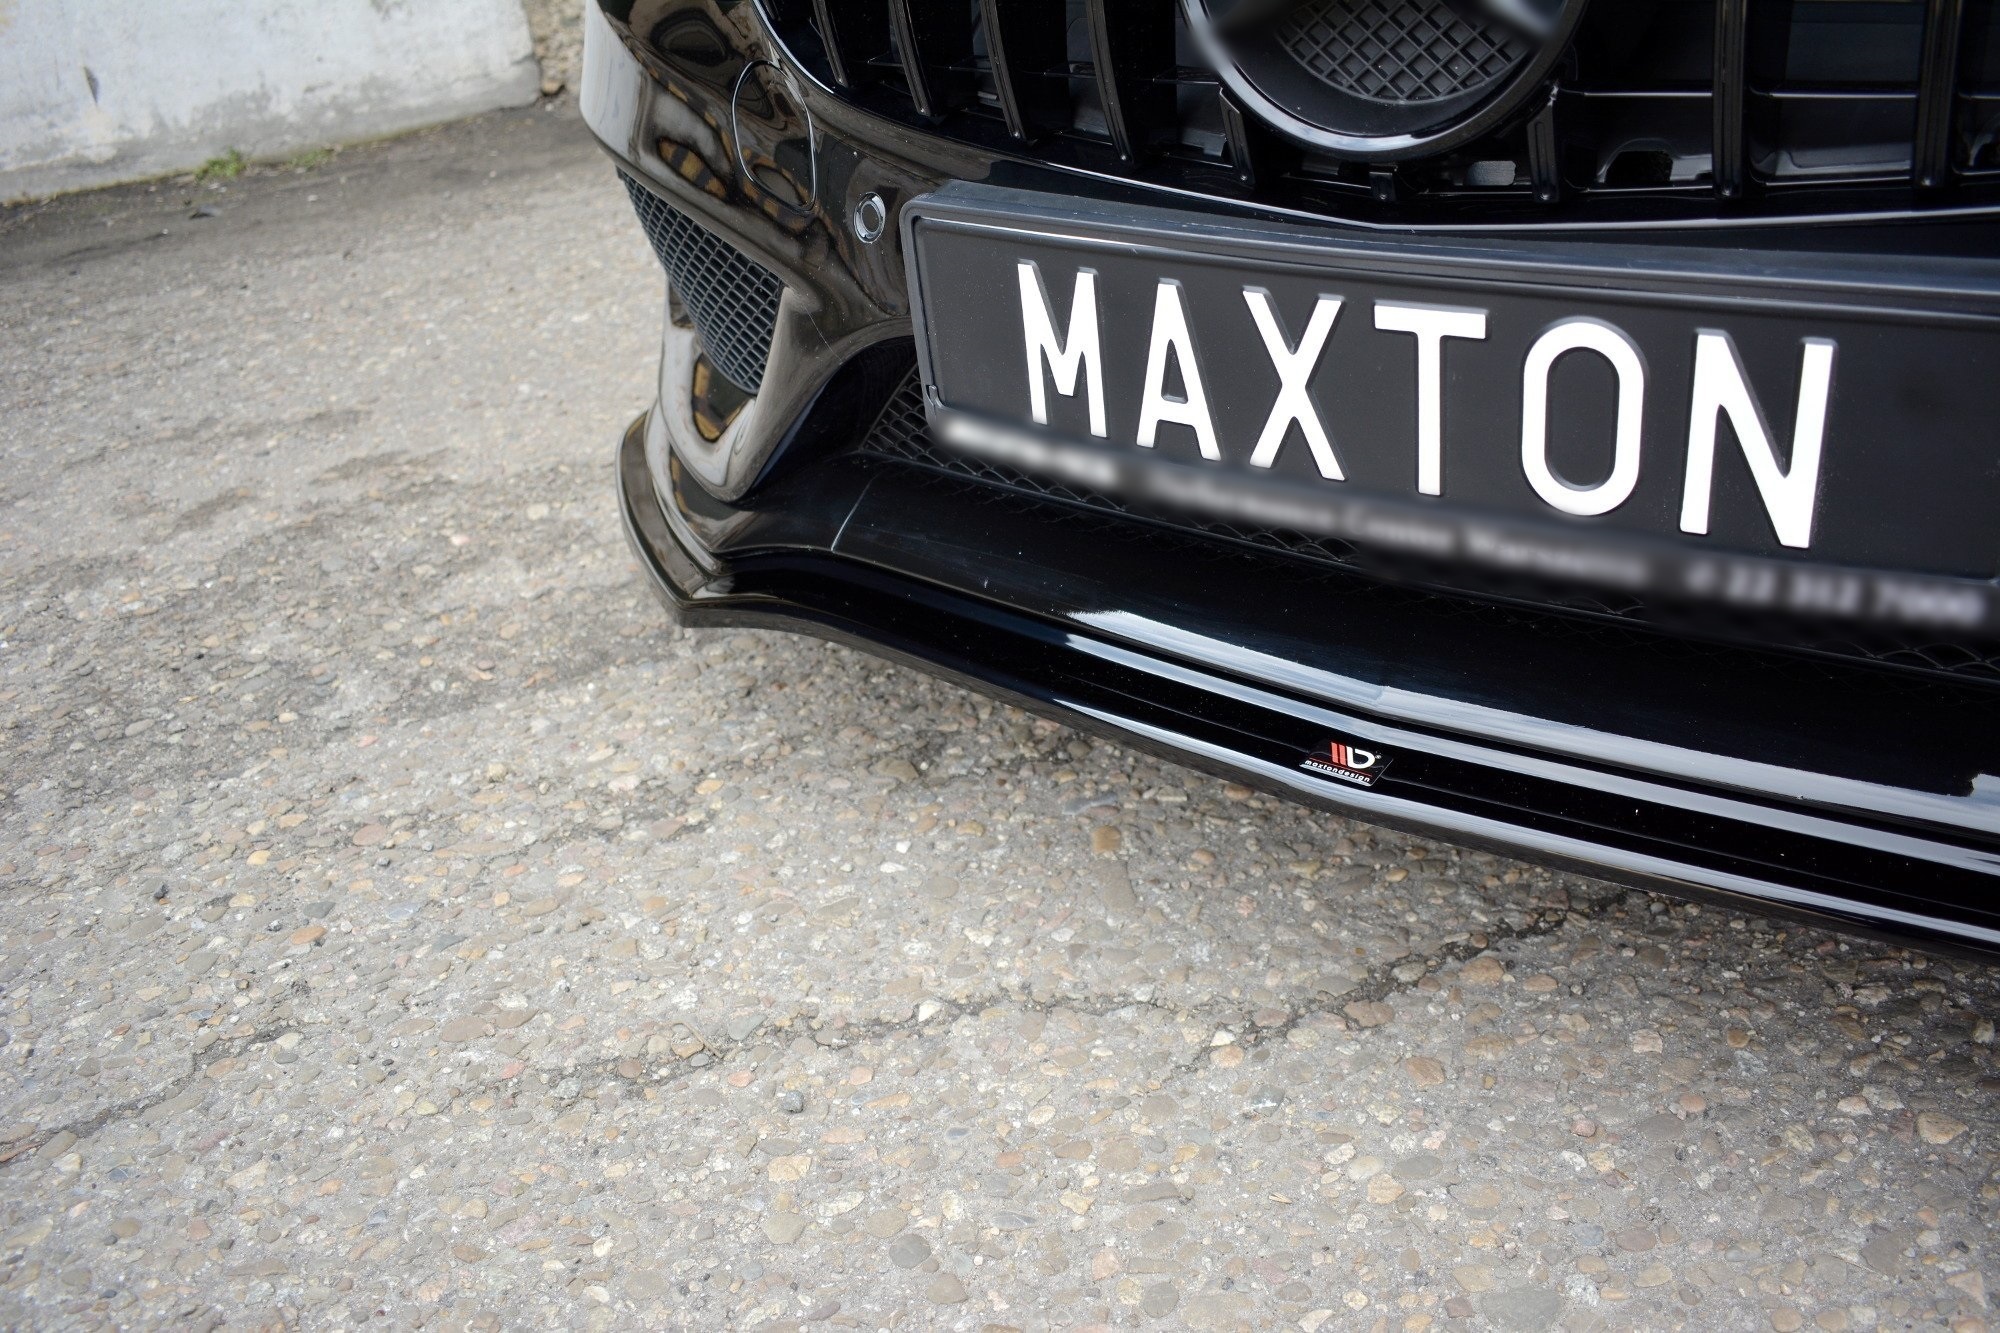 Front Lippe / Front Splitter / Frontansatz V.1 für Mercedes-Benz C-Klasse  205 AMG-Line Facelift von Maxton Design